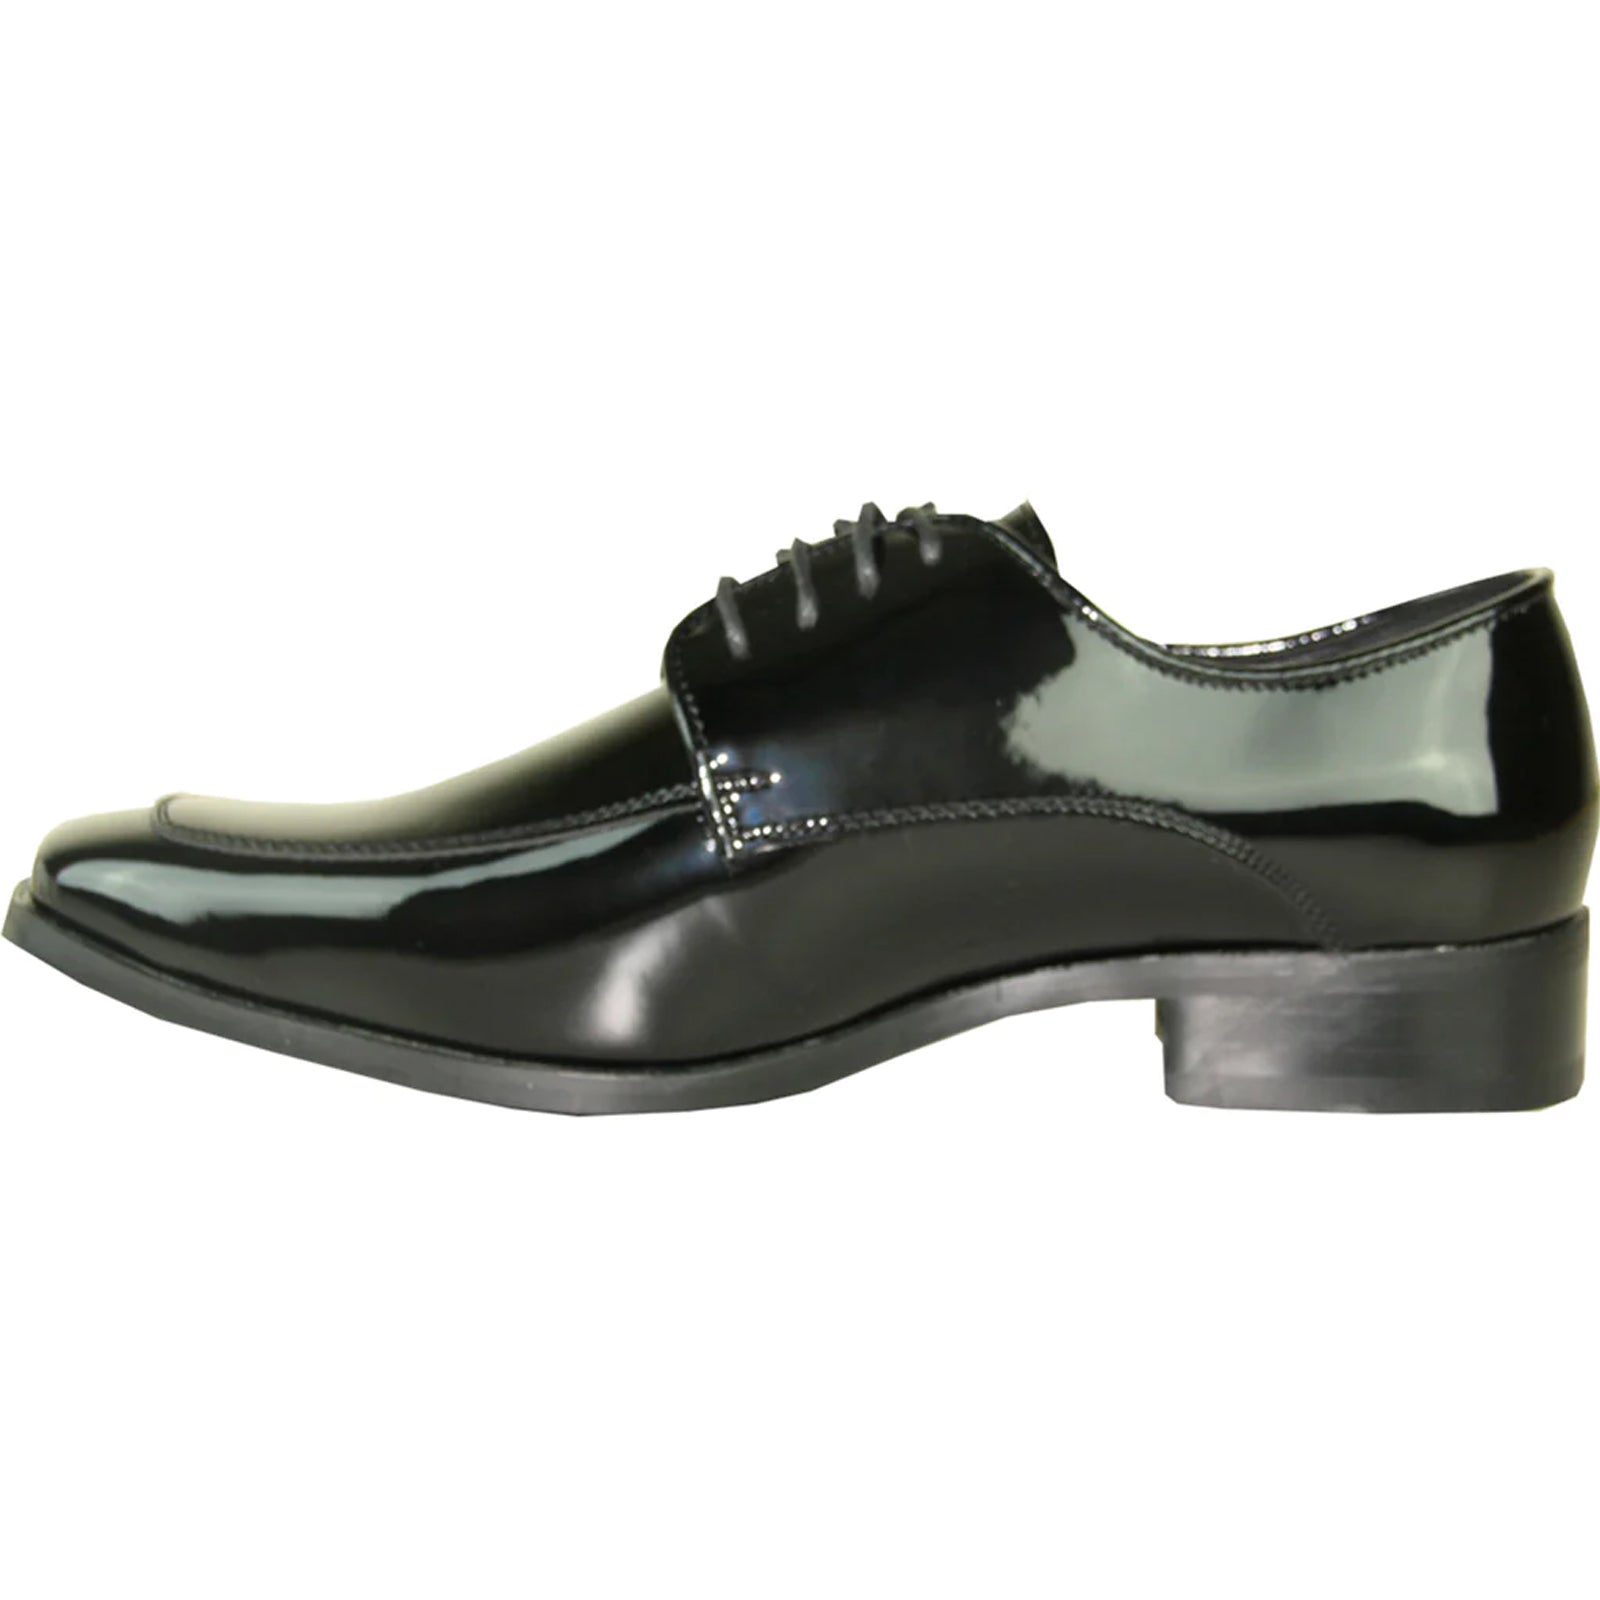 "Black Men's Classic Moc Toe Patent Tuxedo Prom Shoe"